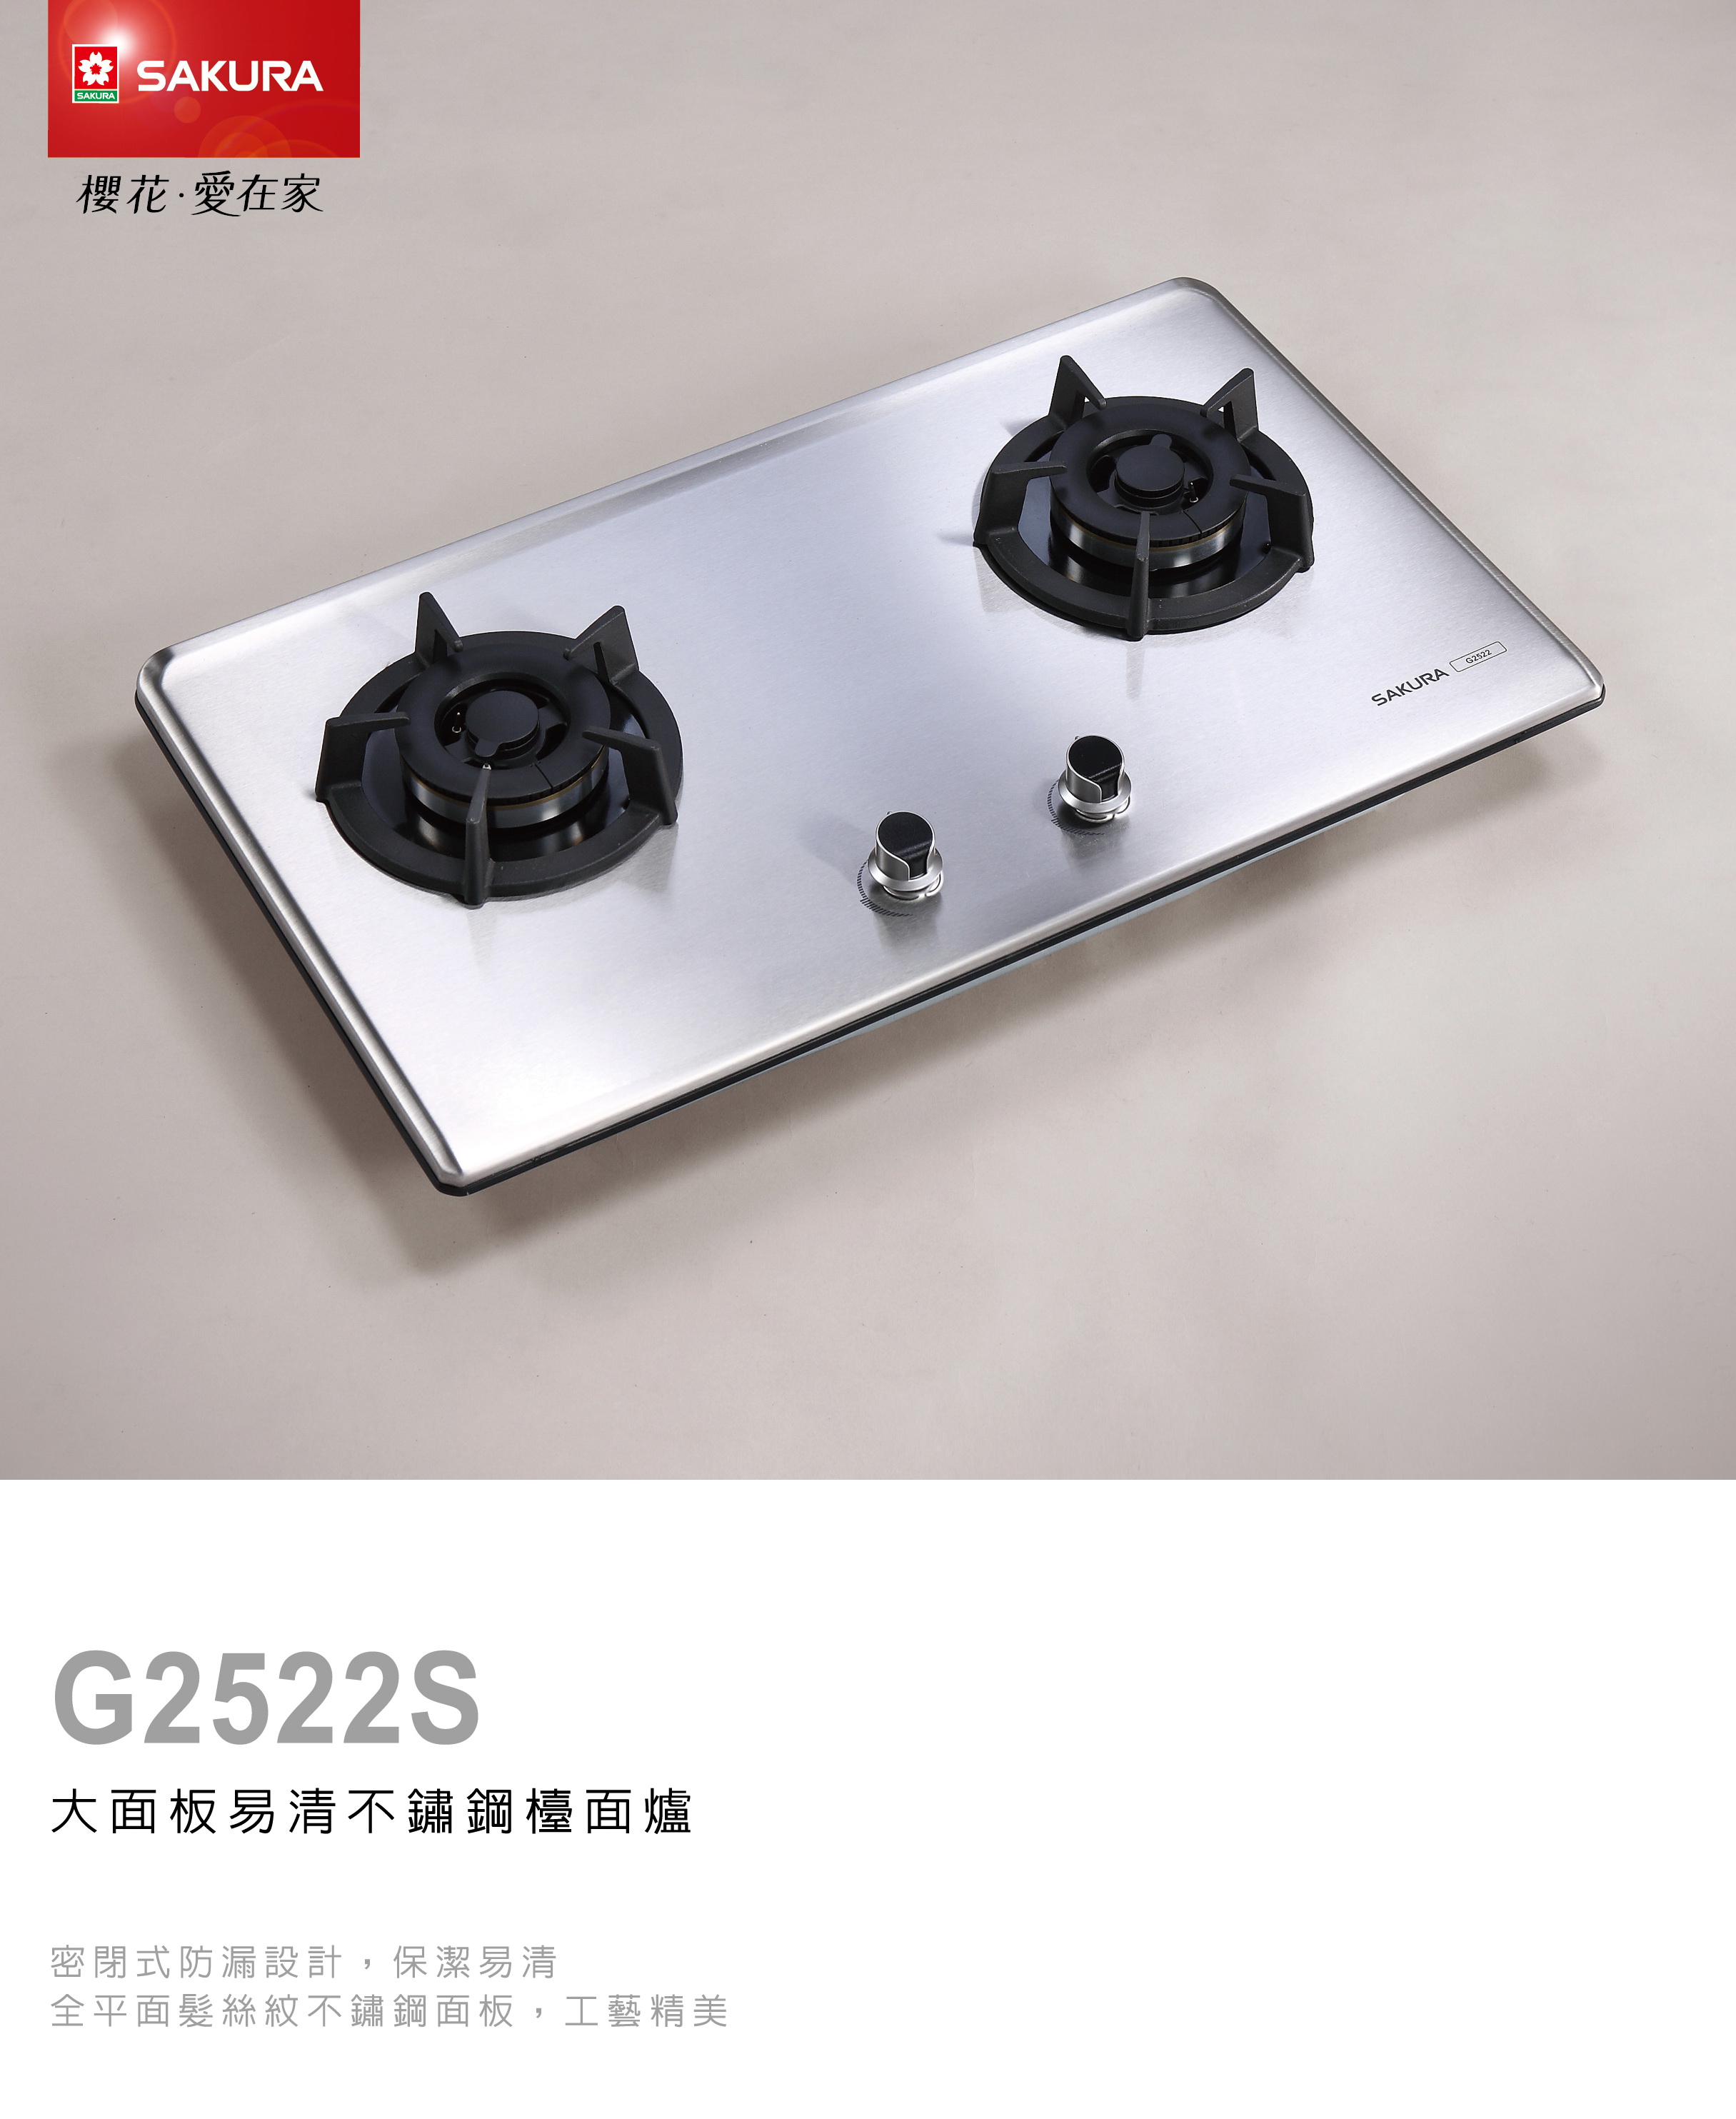 櫻花瓦斯爐G2522S 二口小面板易清檯面爐.jpg